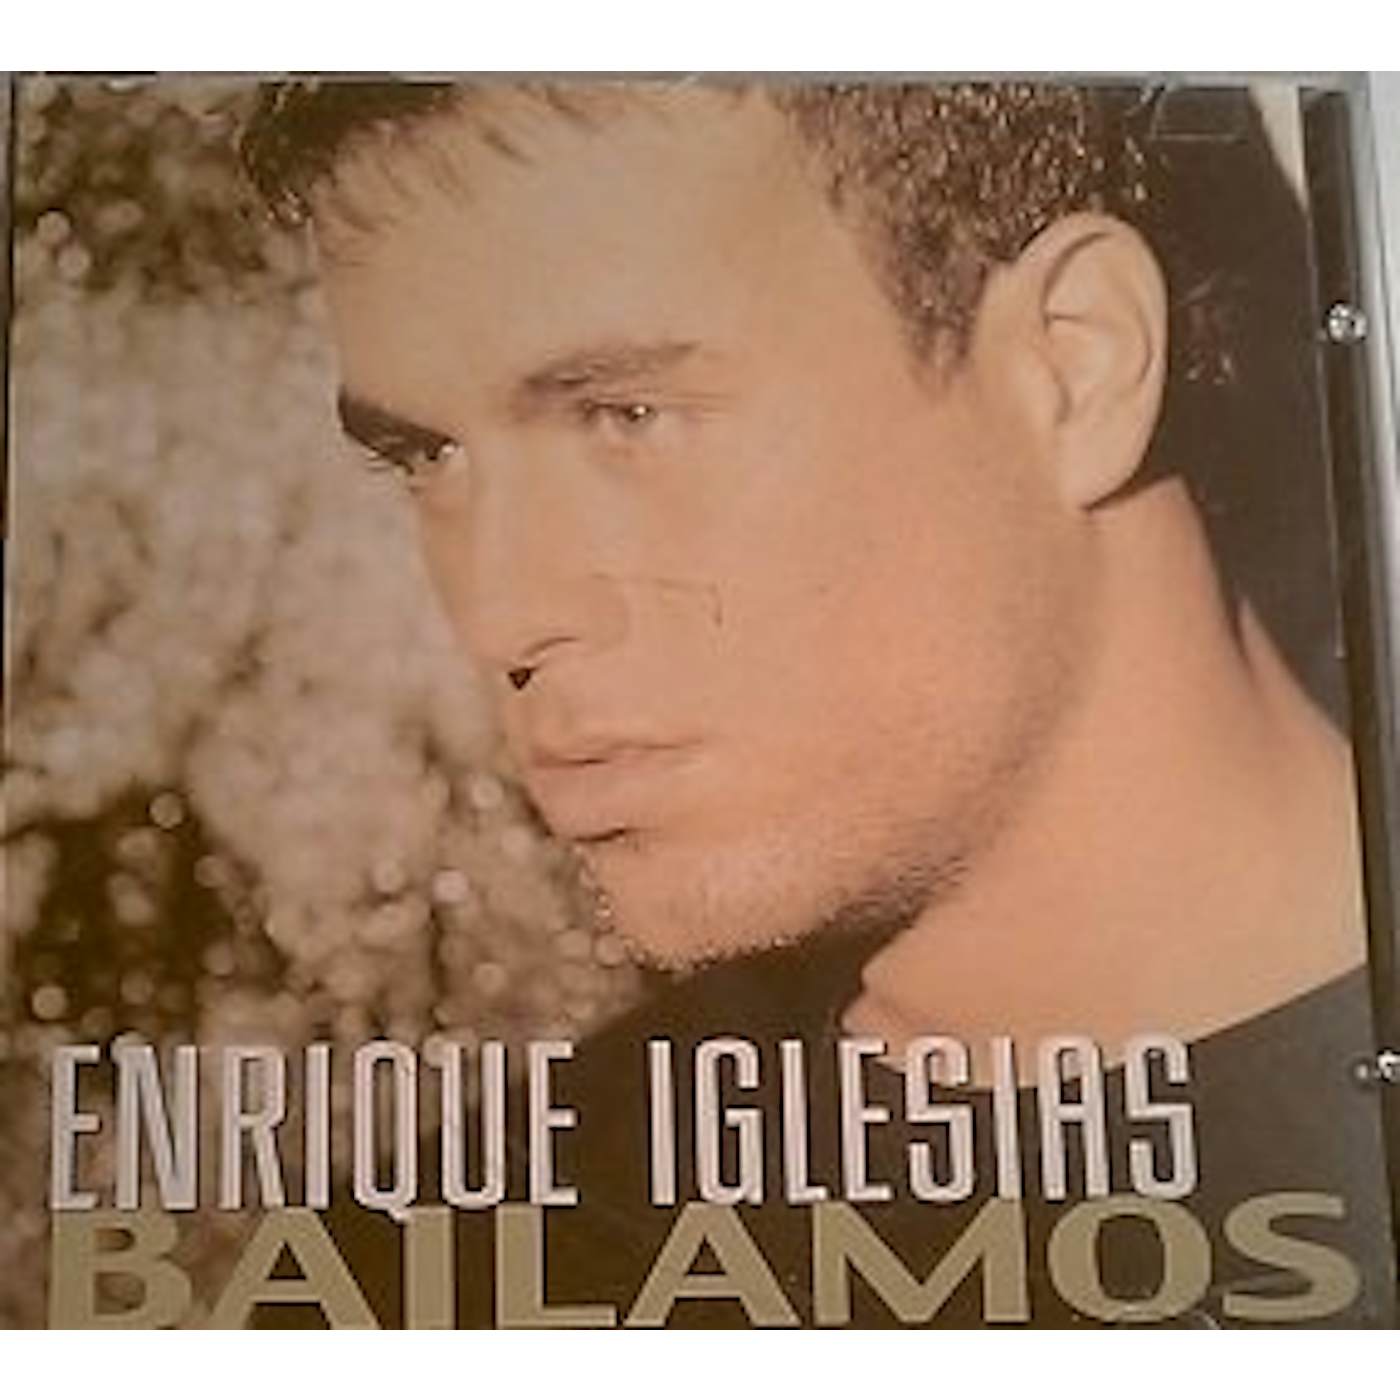 Enrique Iglesias Bailamos Vinyl Record